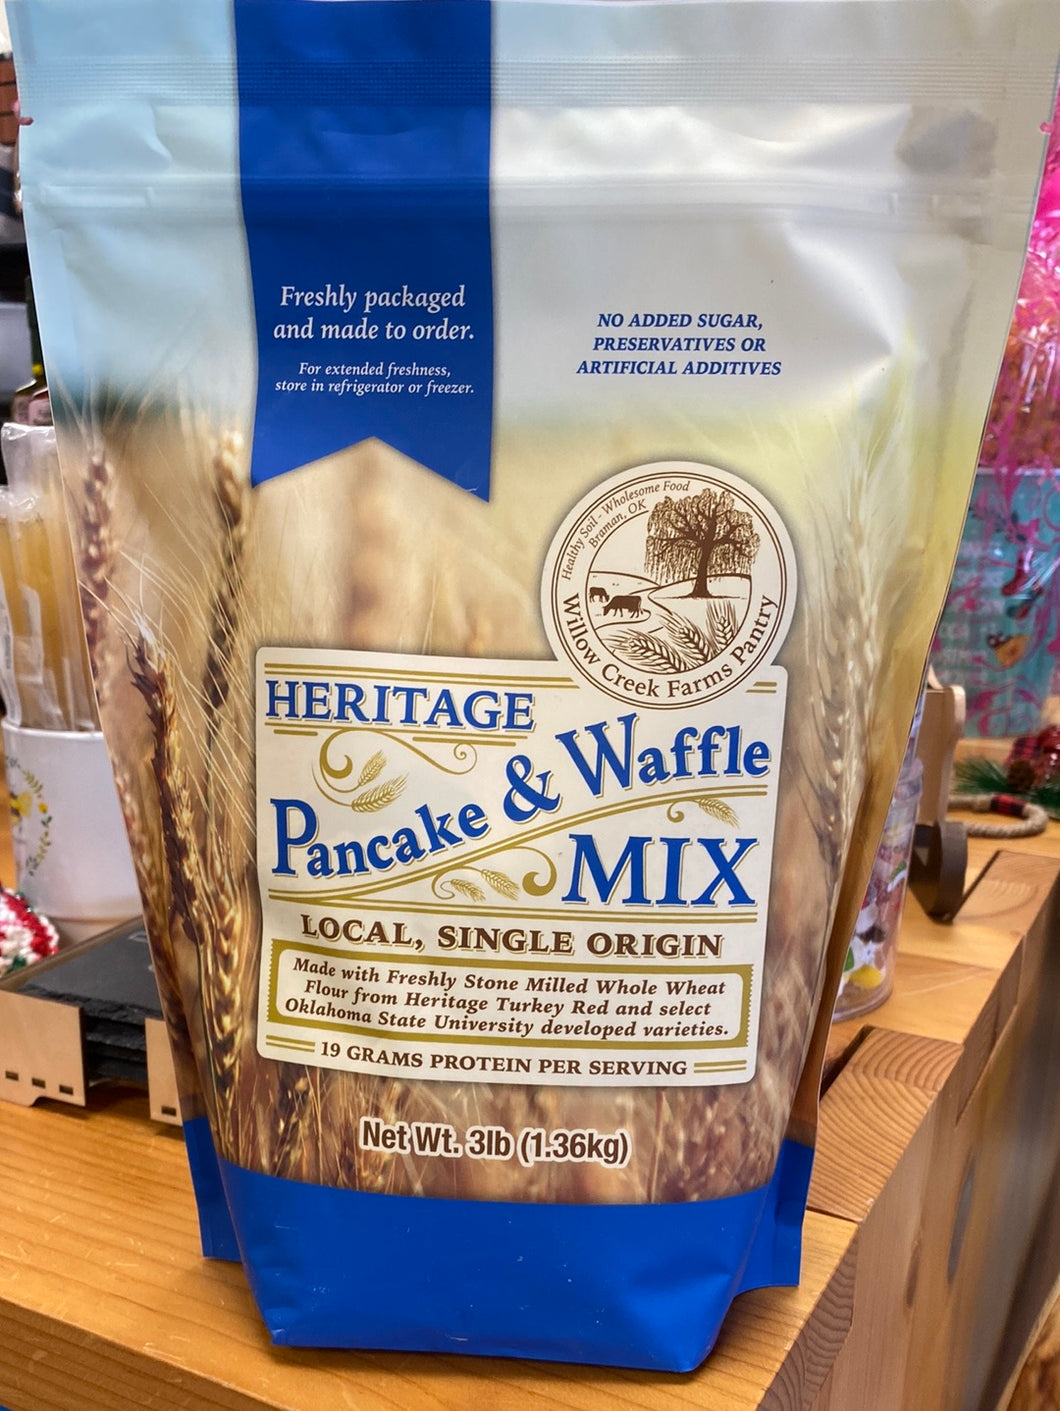 Heritage Pancake & Waffle Mix